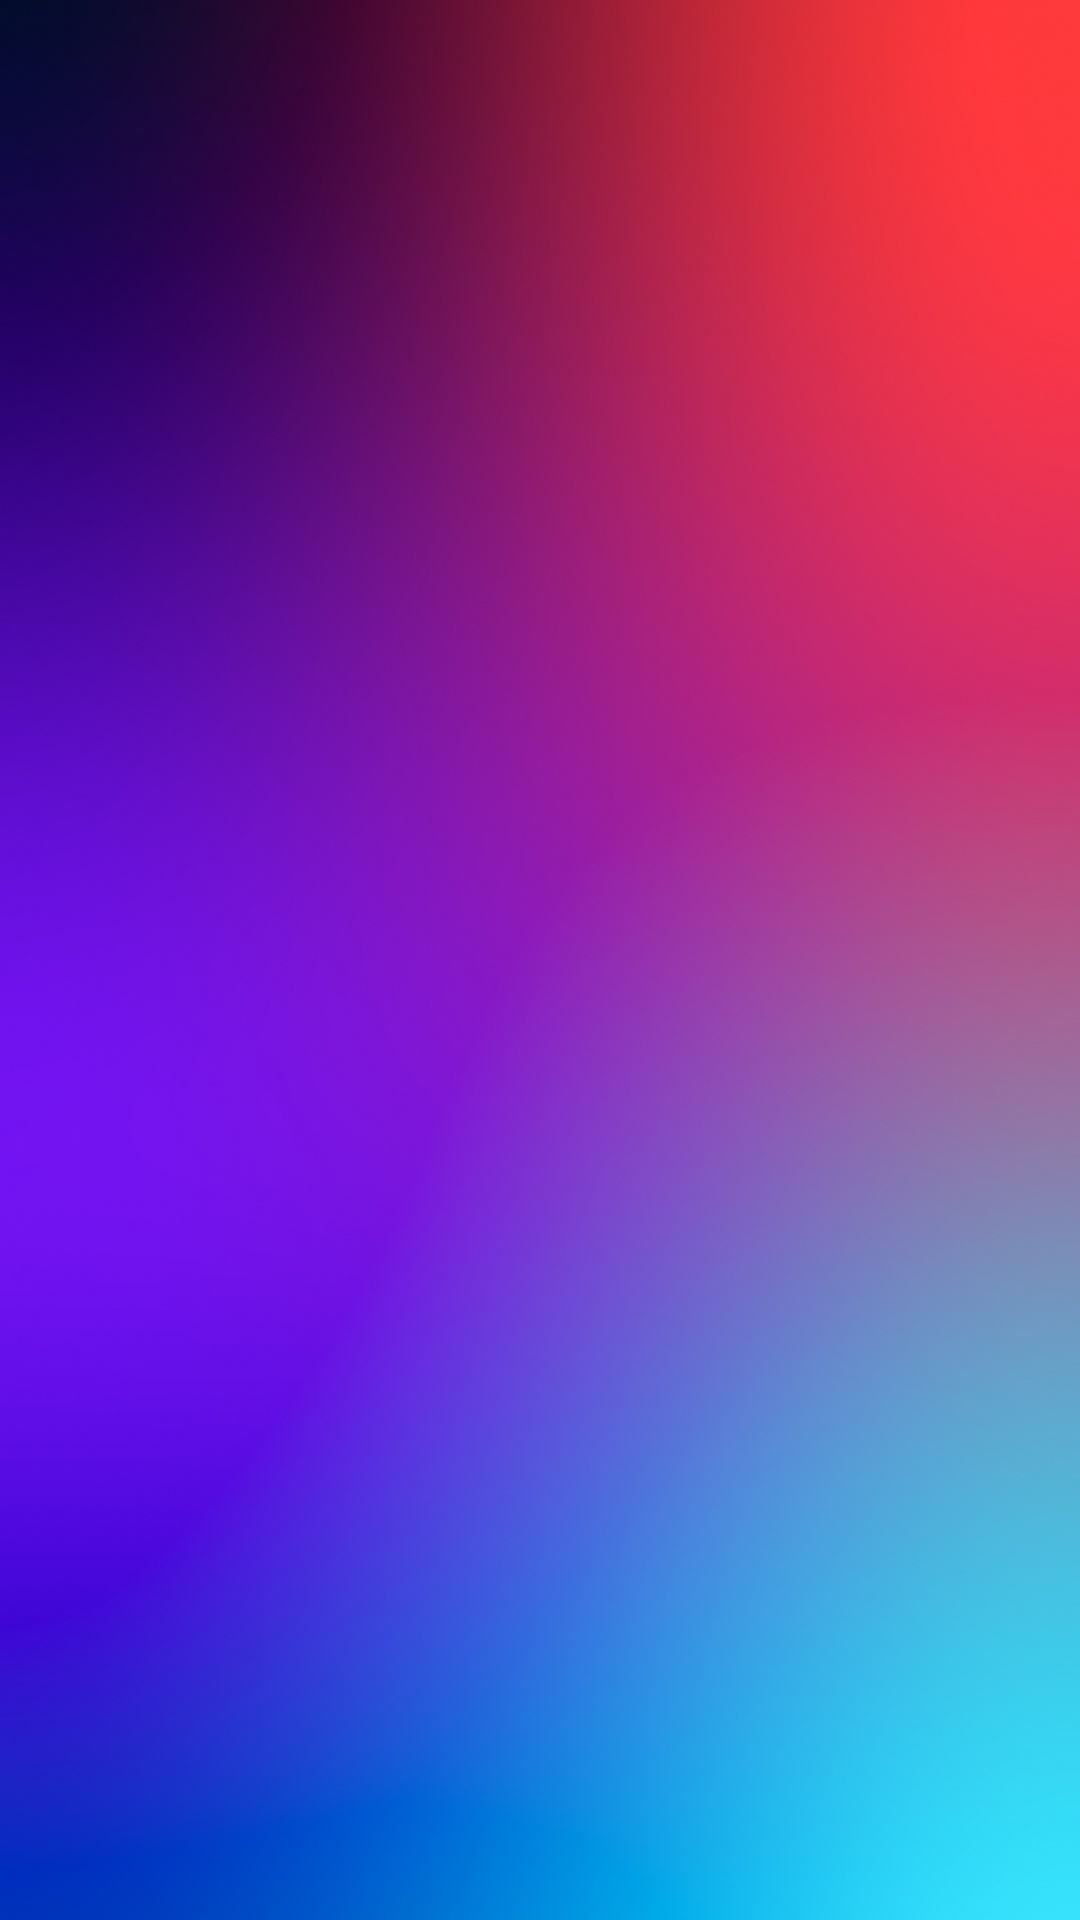 Atmosphäre, Purpur, Azure, Blau, Veilchen. Wallpaper in 1080x1920 Resolution